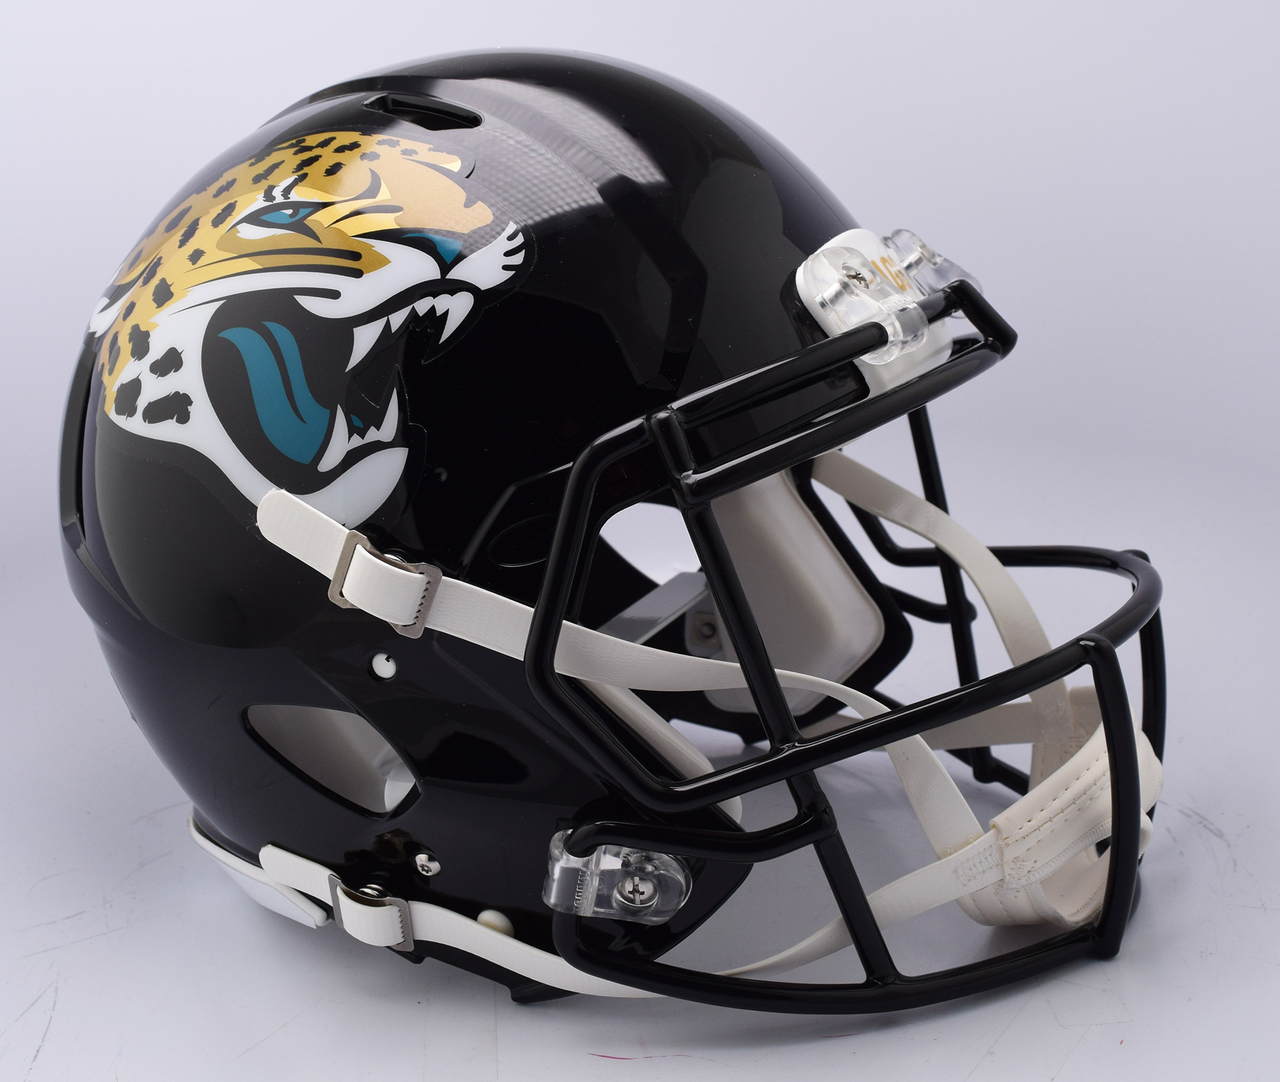 Jacksonville Jaguars Helmet Riddell Authentic Full Size Speed Style 2018